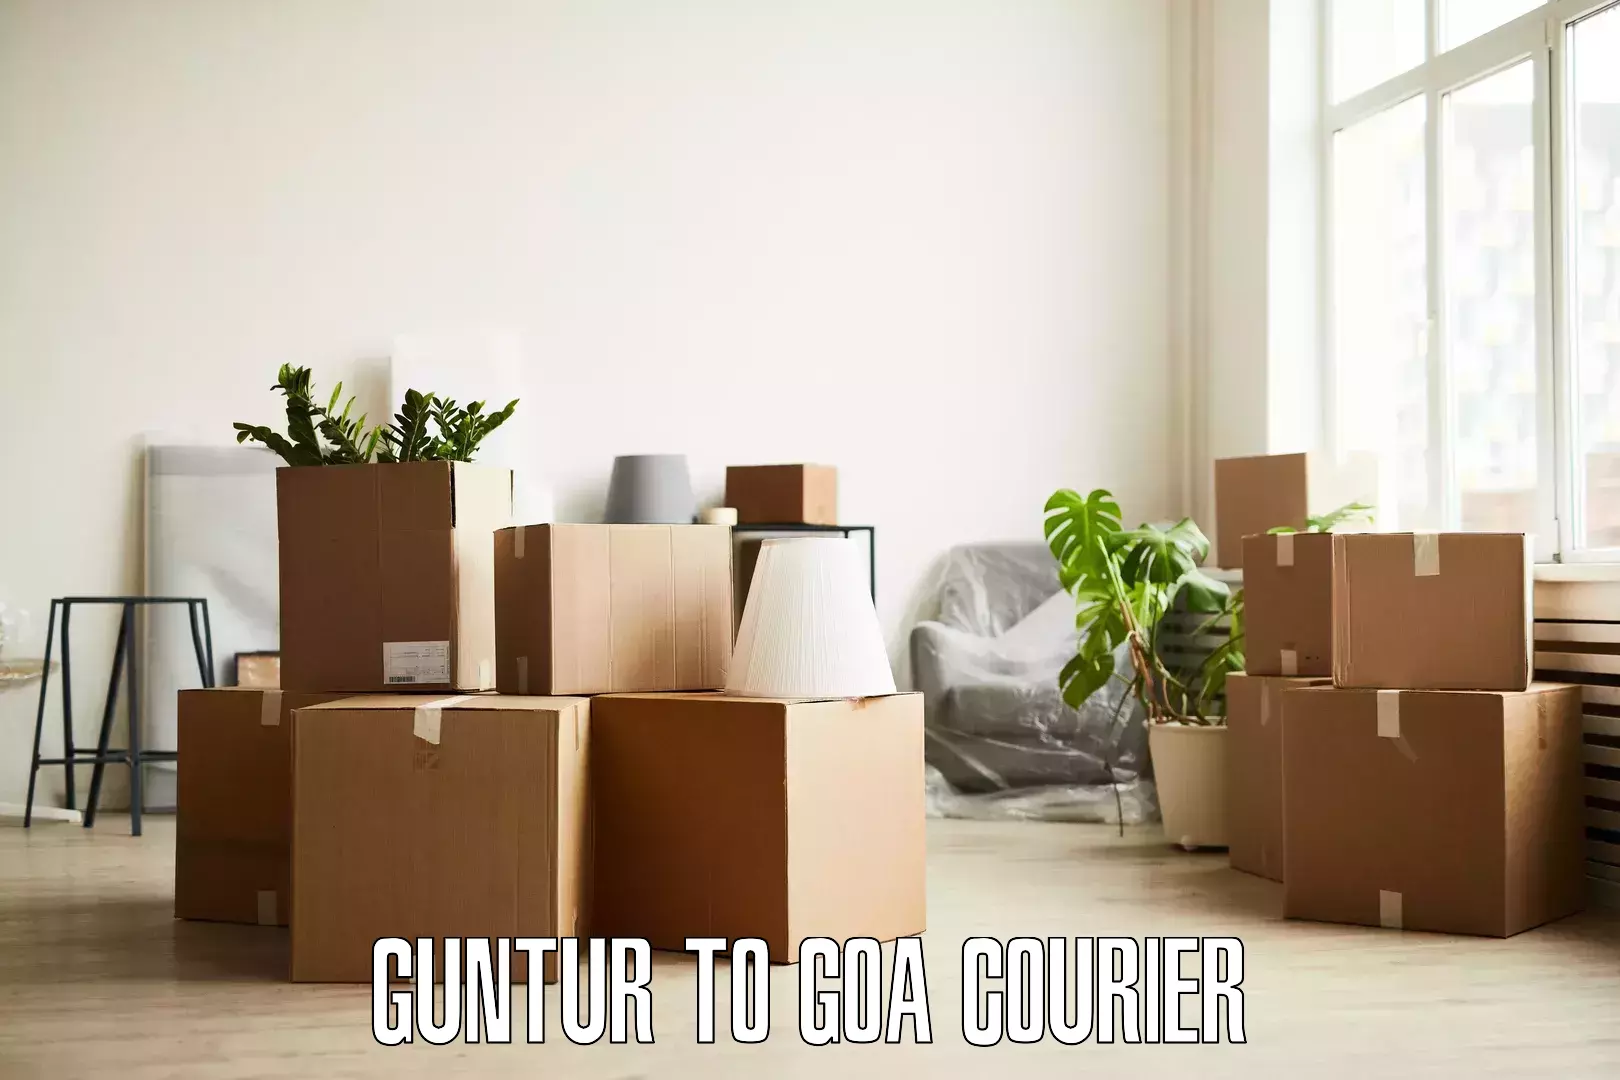 Furniture transport professionals Guntur to South Goa